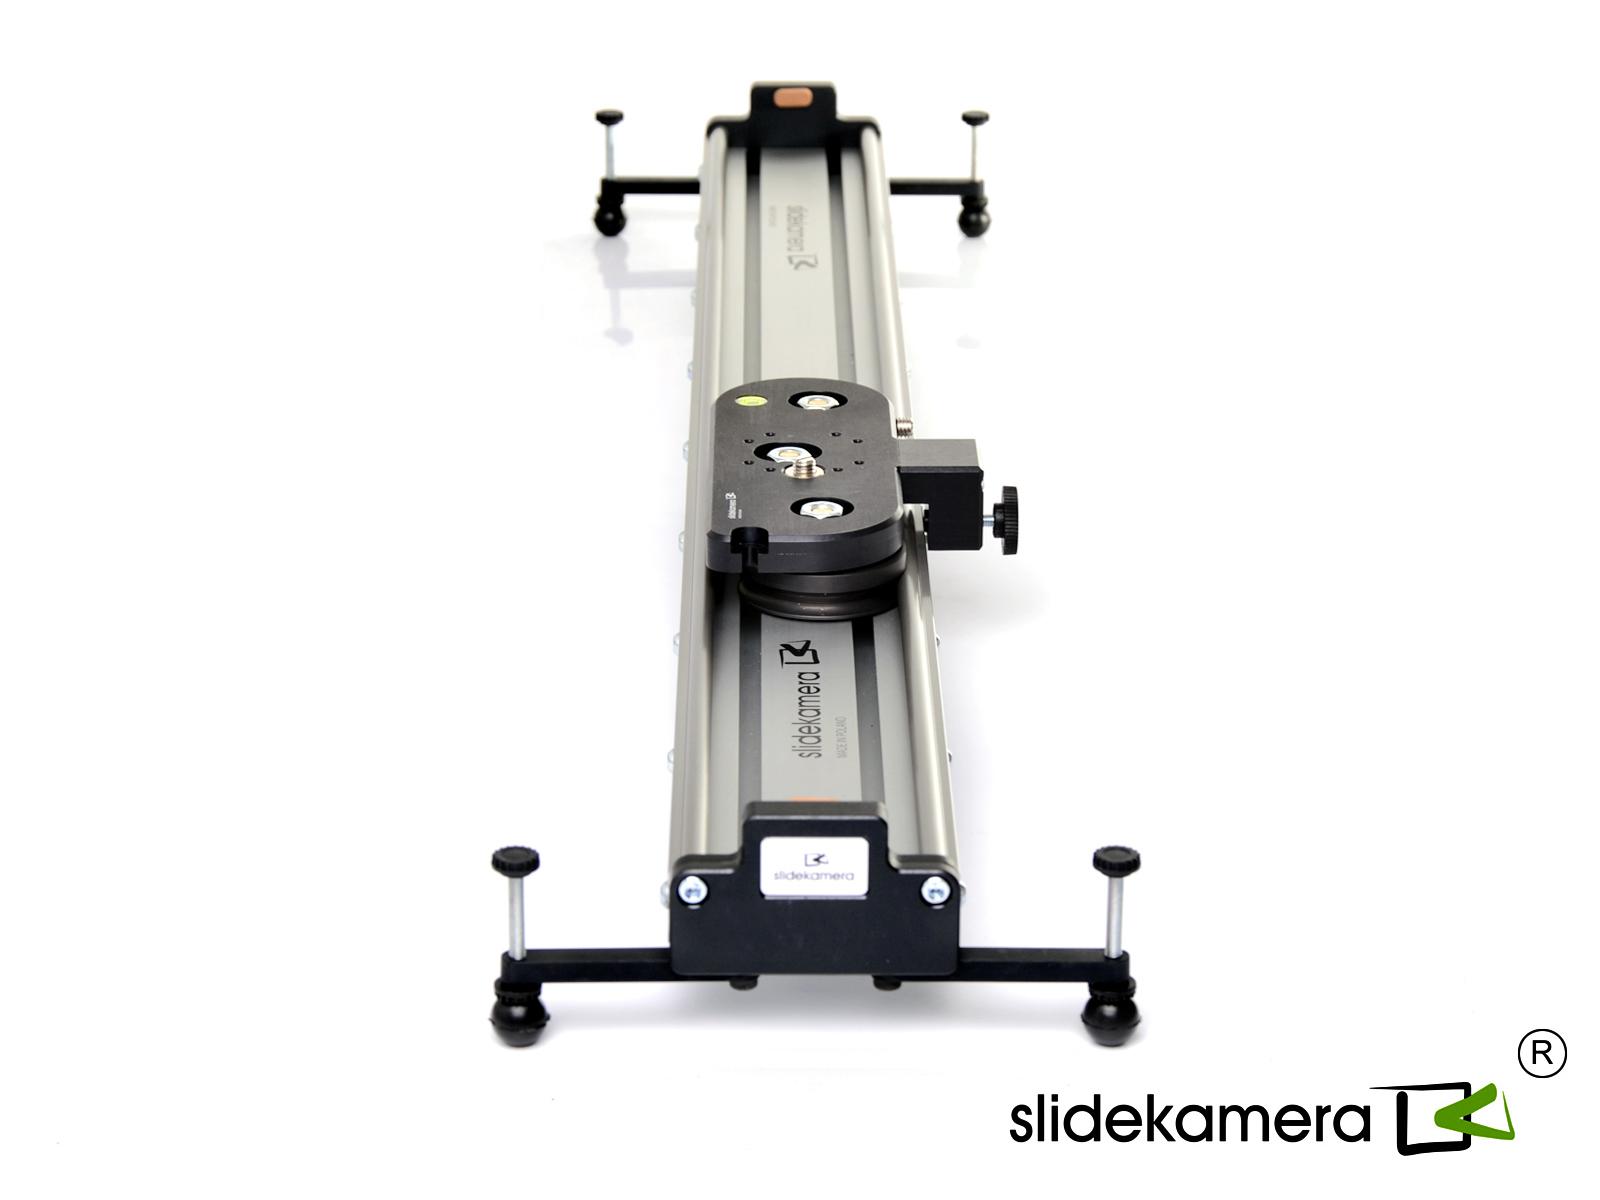  SlideKamera X-SLIDER 1000 BASIC   Ultra-mart